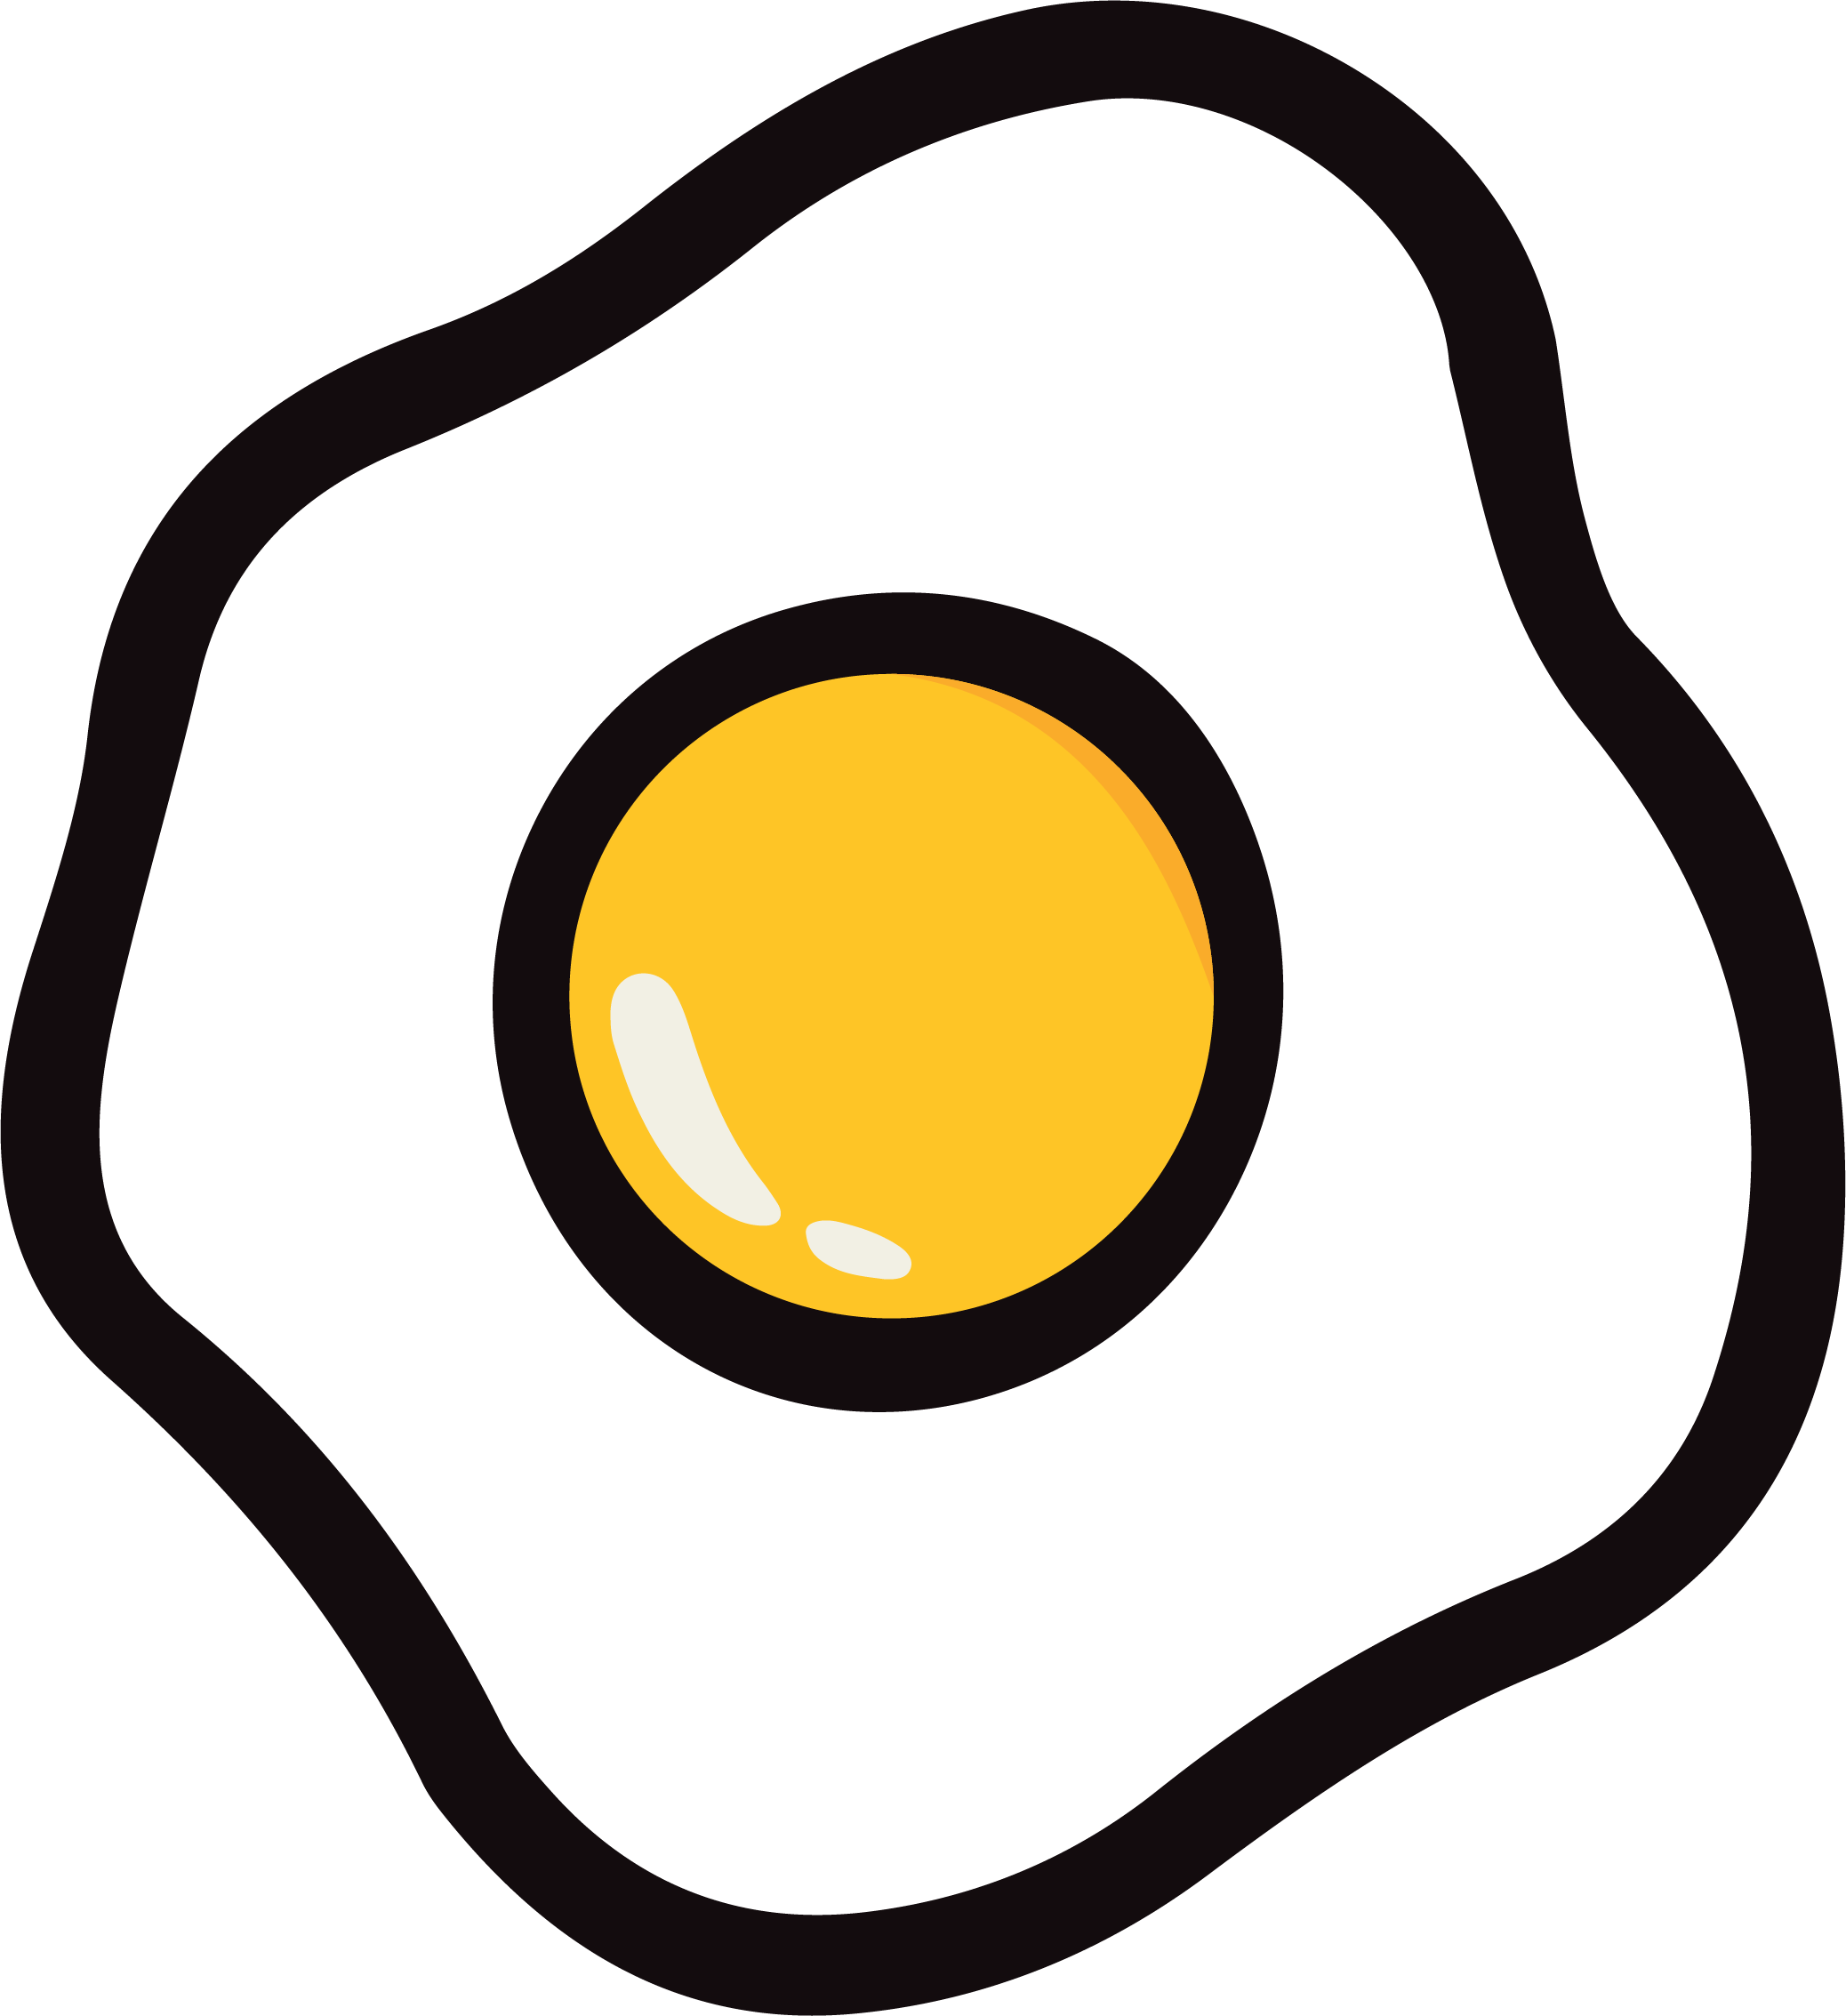 نصف البيض المقلية صورة PNG مجانية